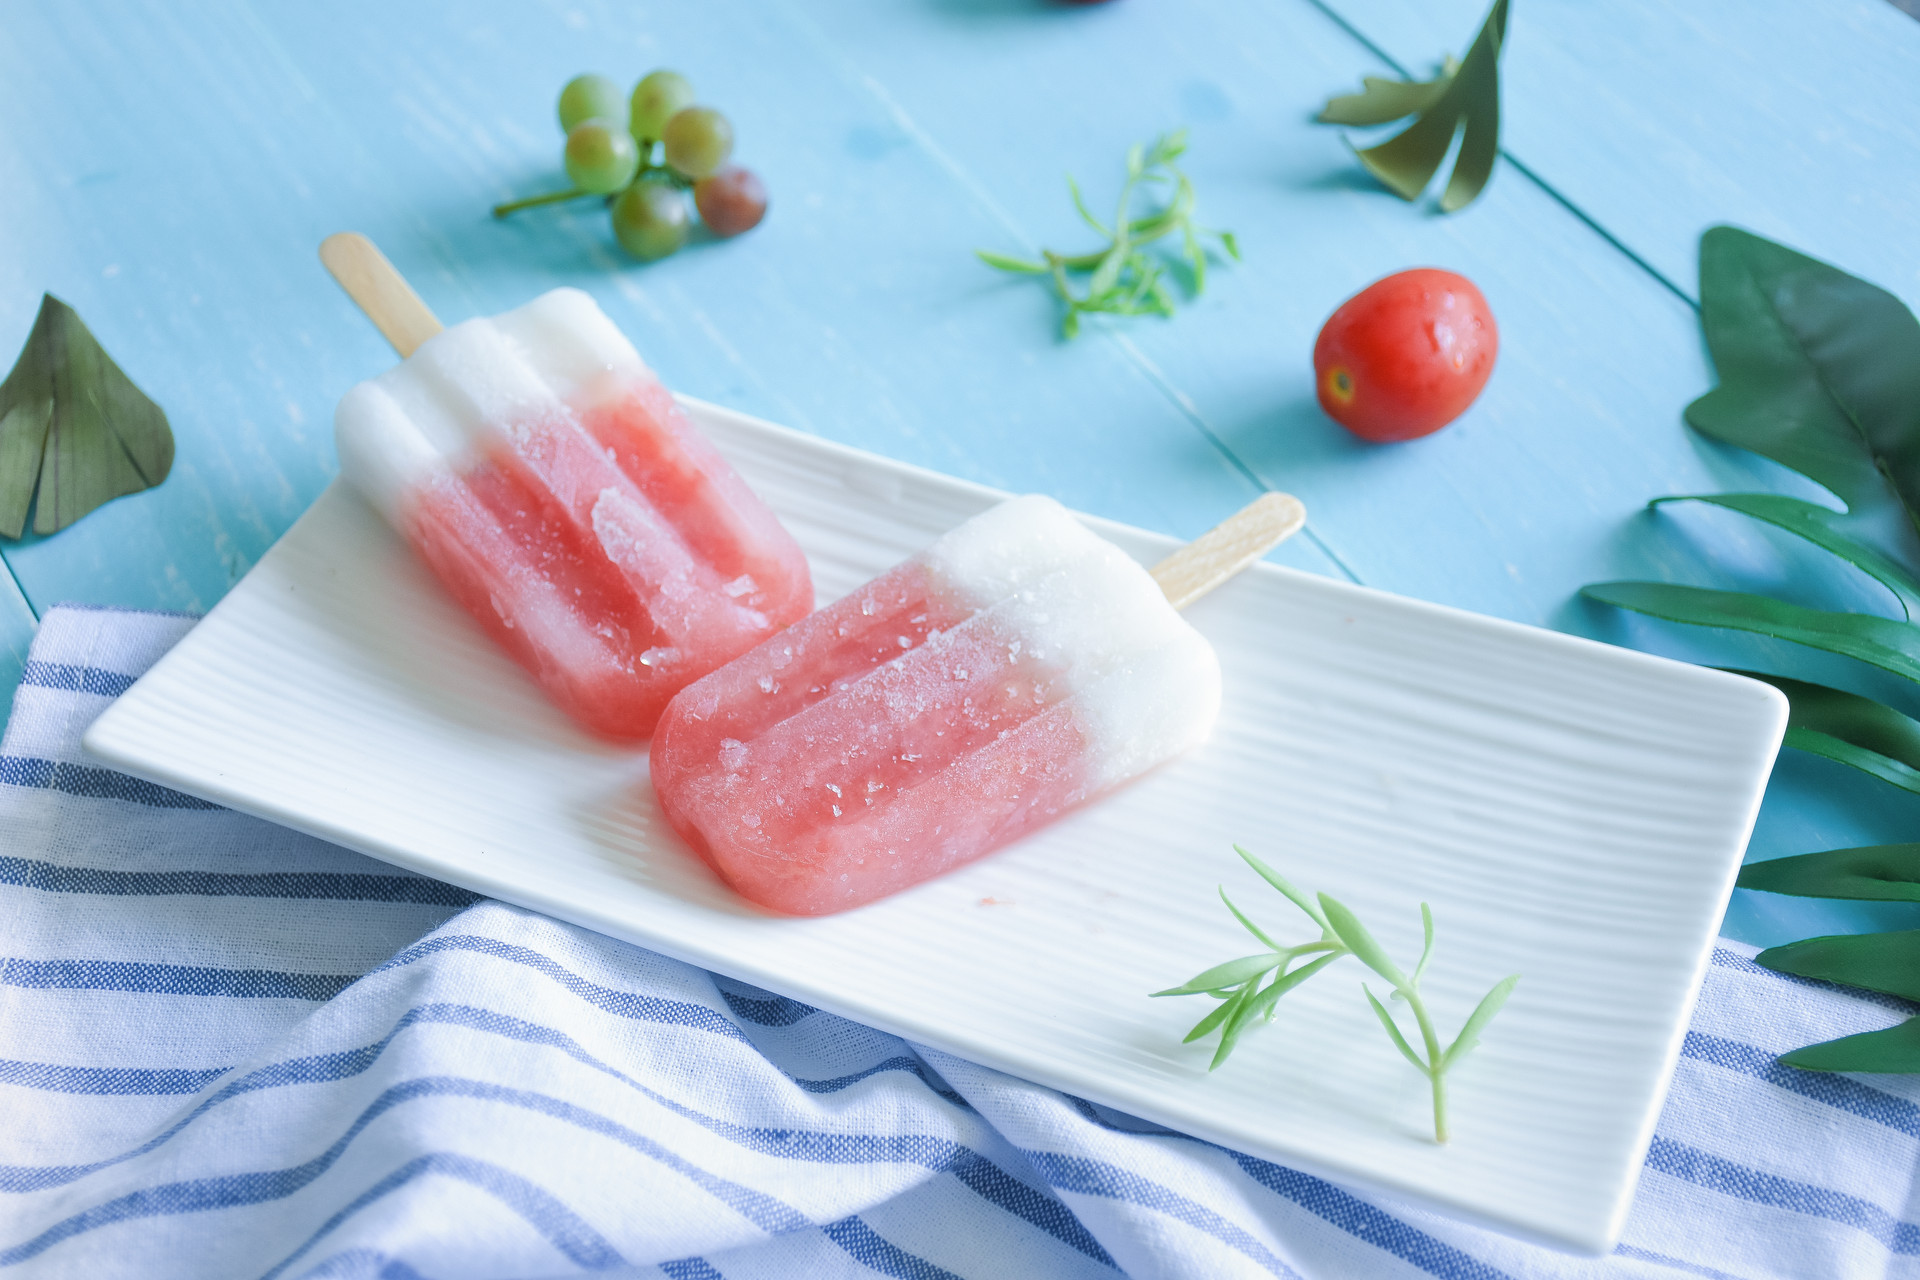 【西瓜冰棒】用冰棒为你撬起整个夏天_哔哩哔哩_bilibili